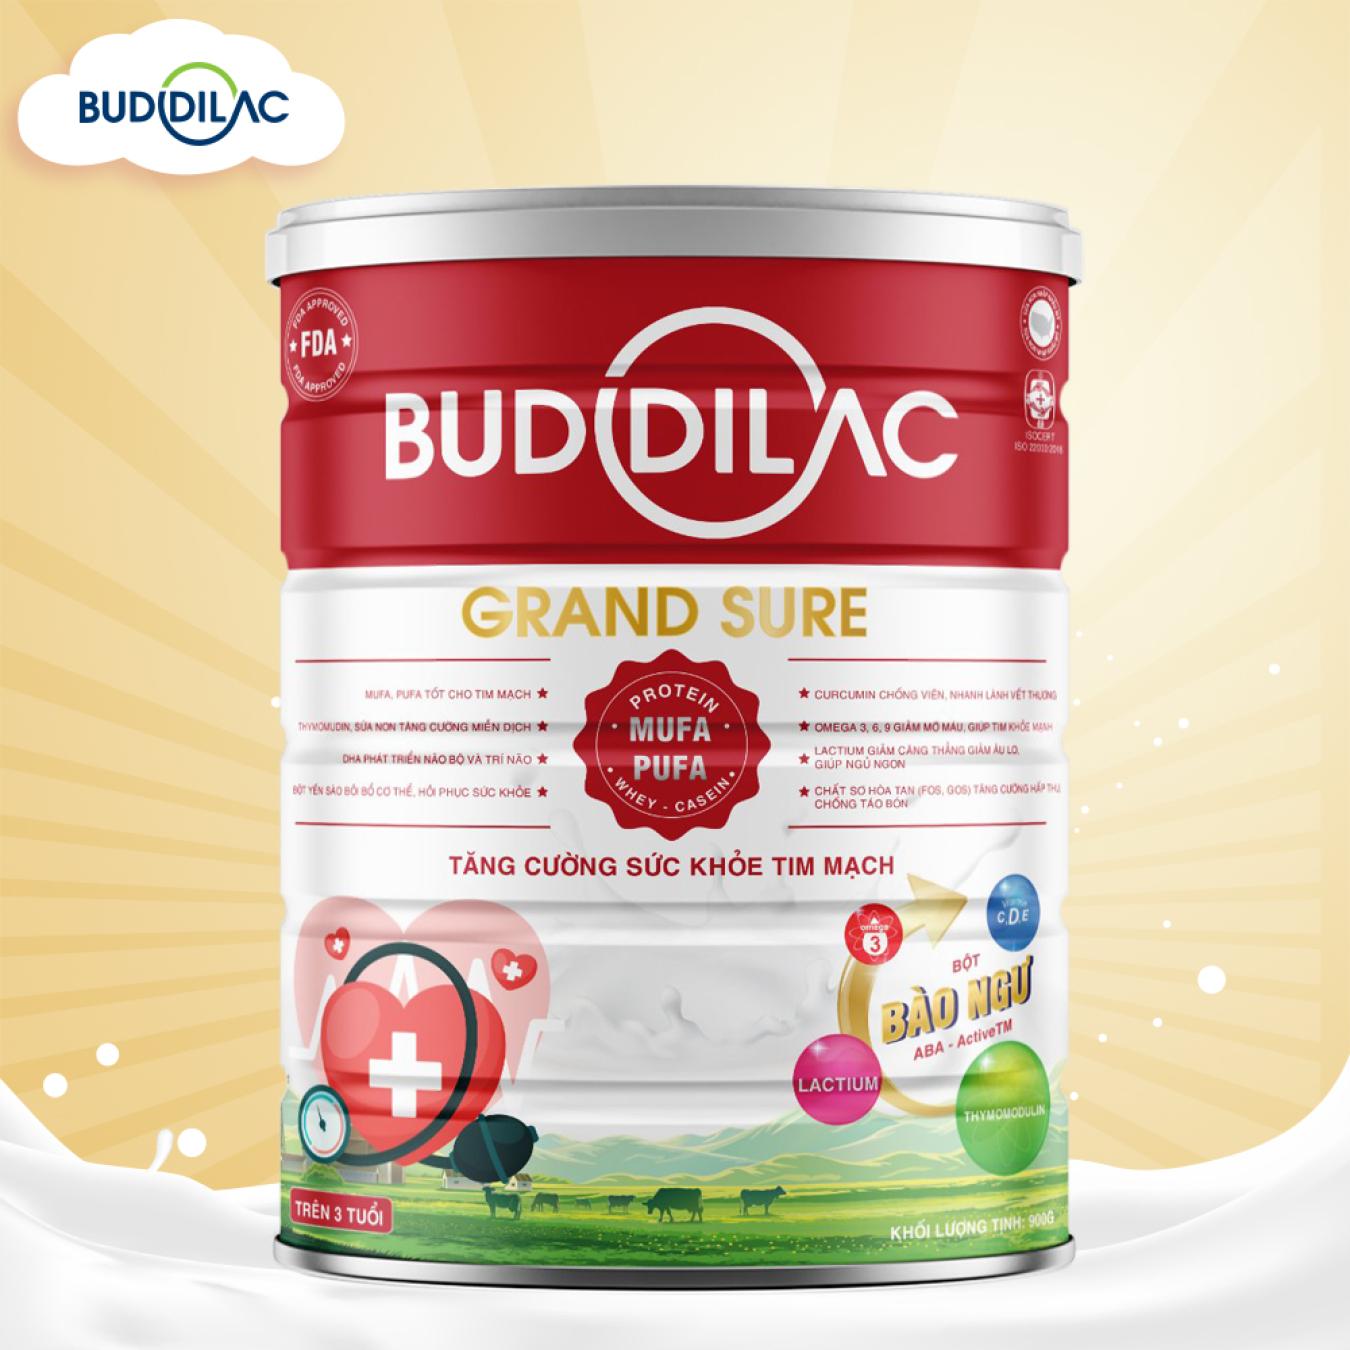 Buddilac Grand Sure - Sữa tăng cường sức khỏe tim mạch